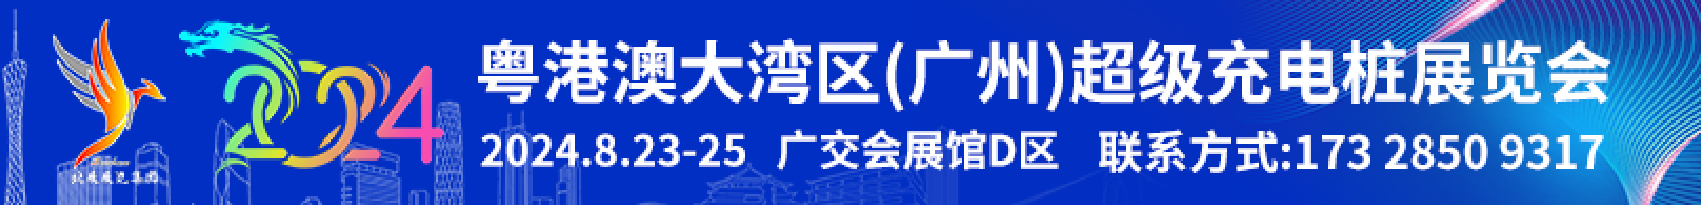 粤港澳大湾区(广州)超级充电桩展览会